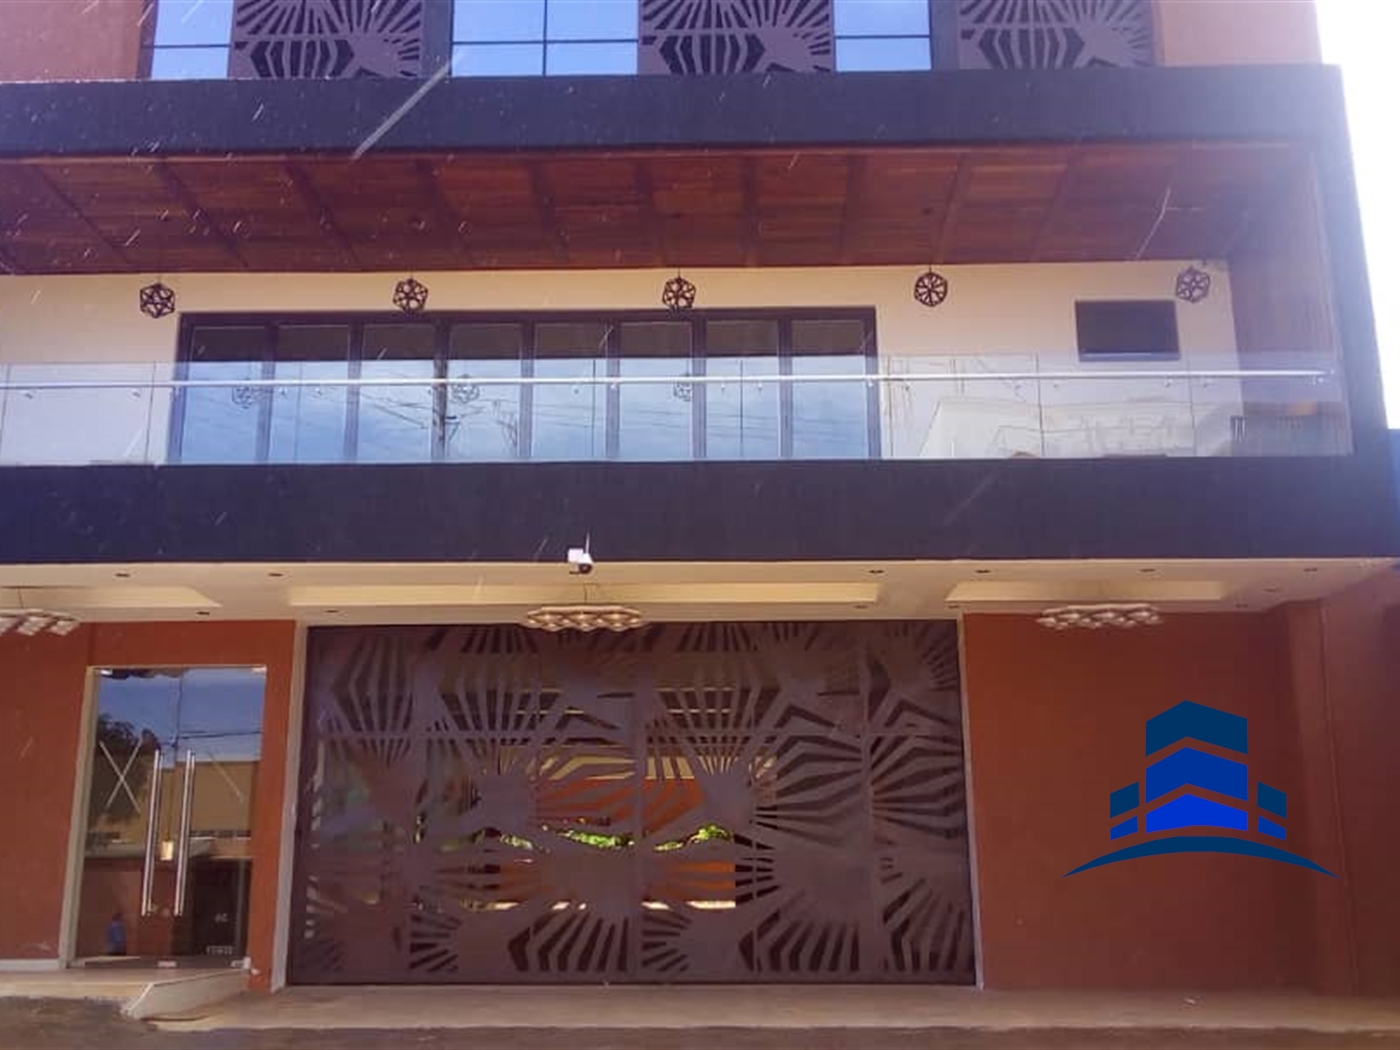 Office Space for sale in Kololo Kampala